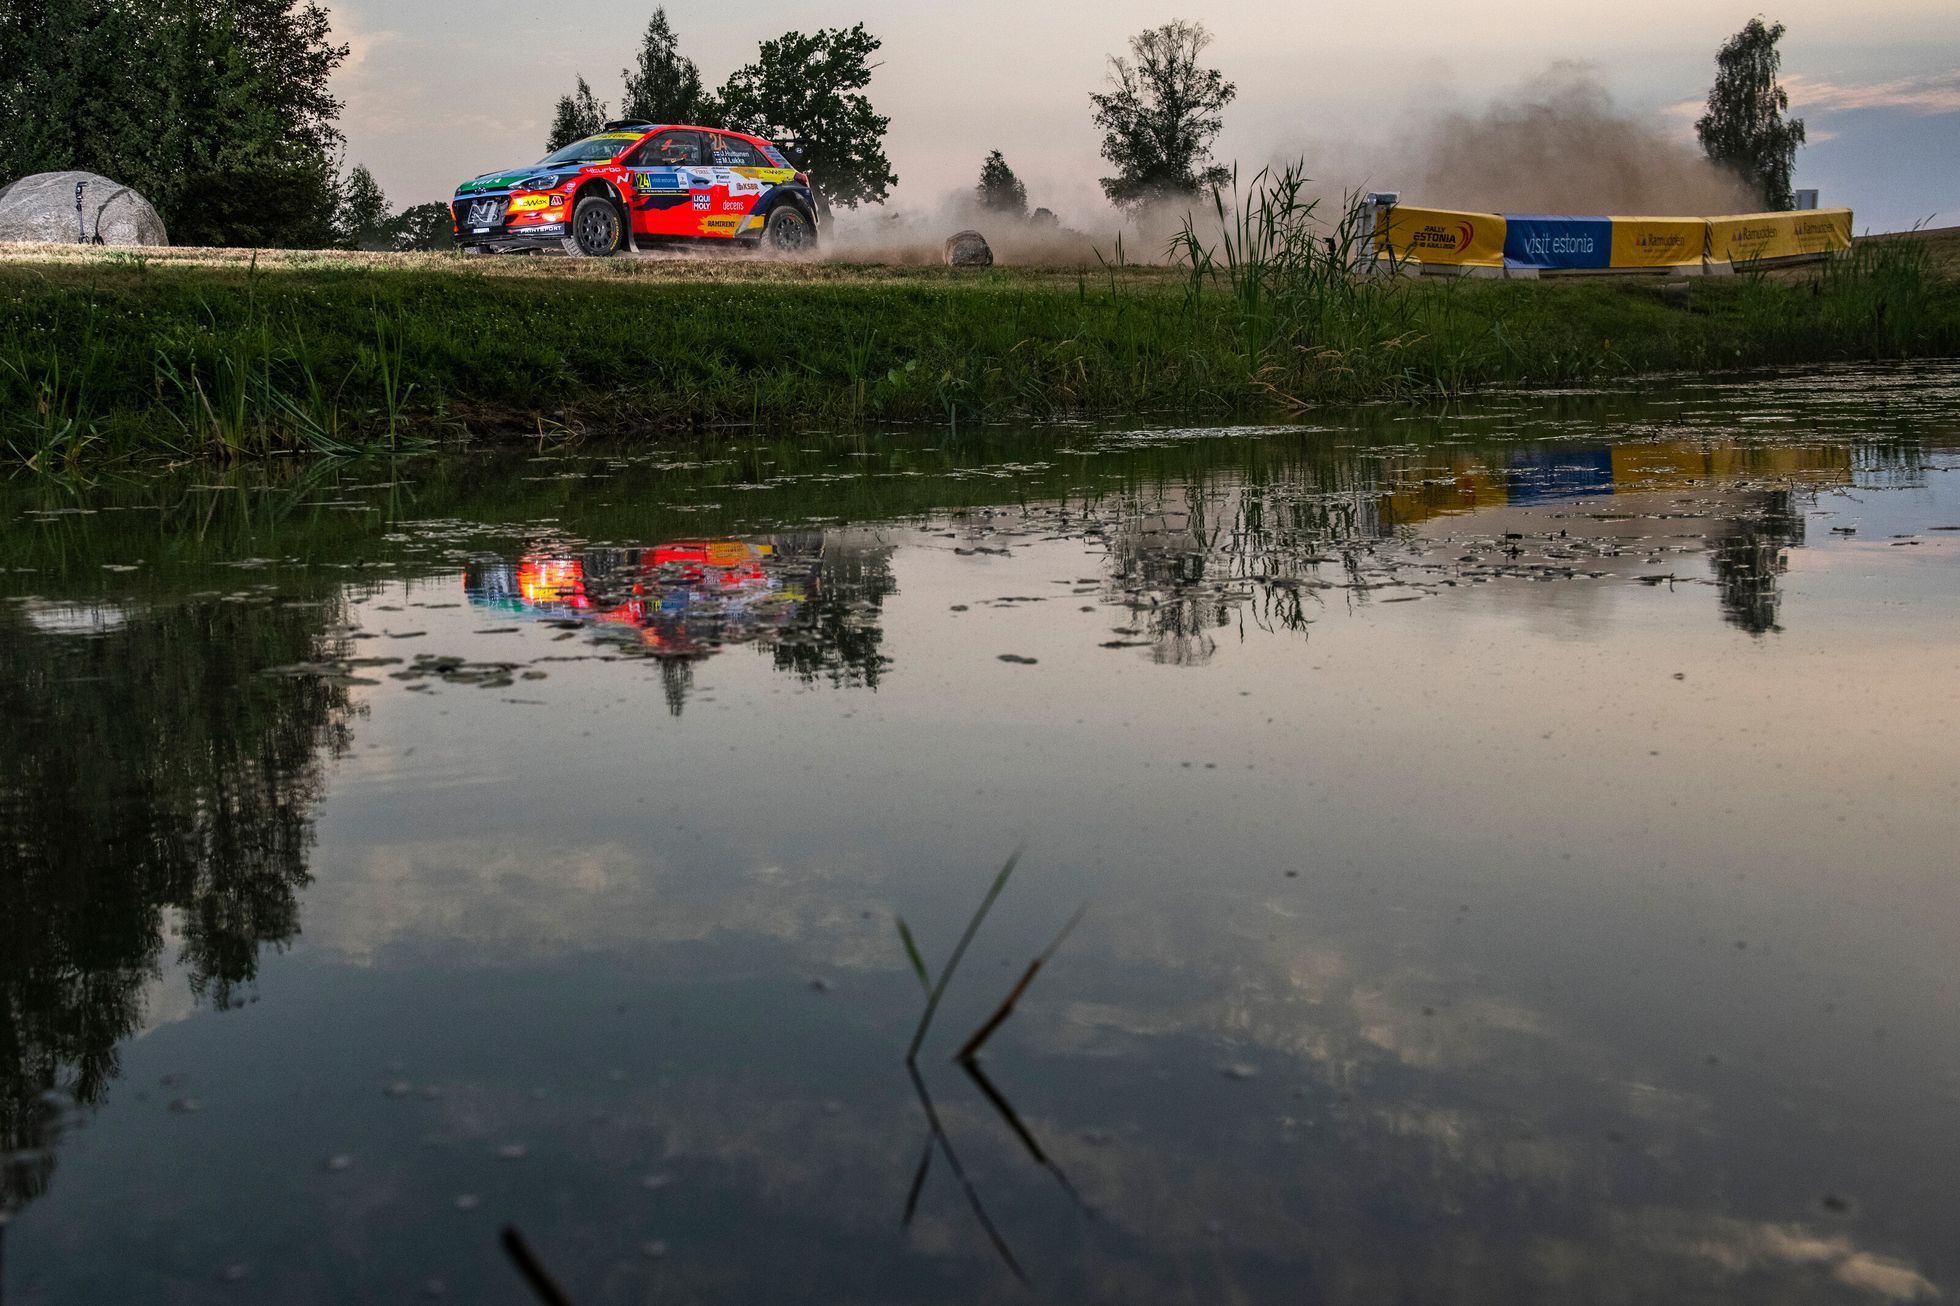 Jari Huttunen, Hyundai na trati Estonské rallye 2021